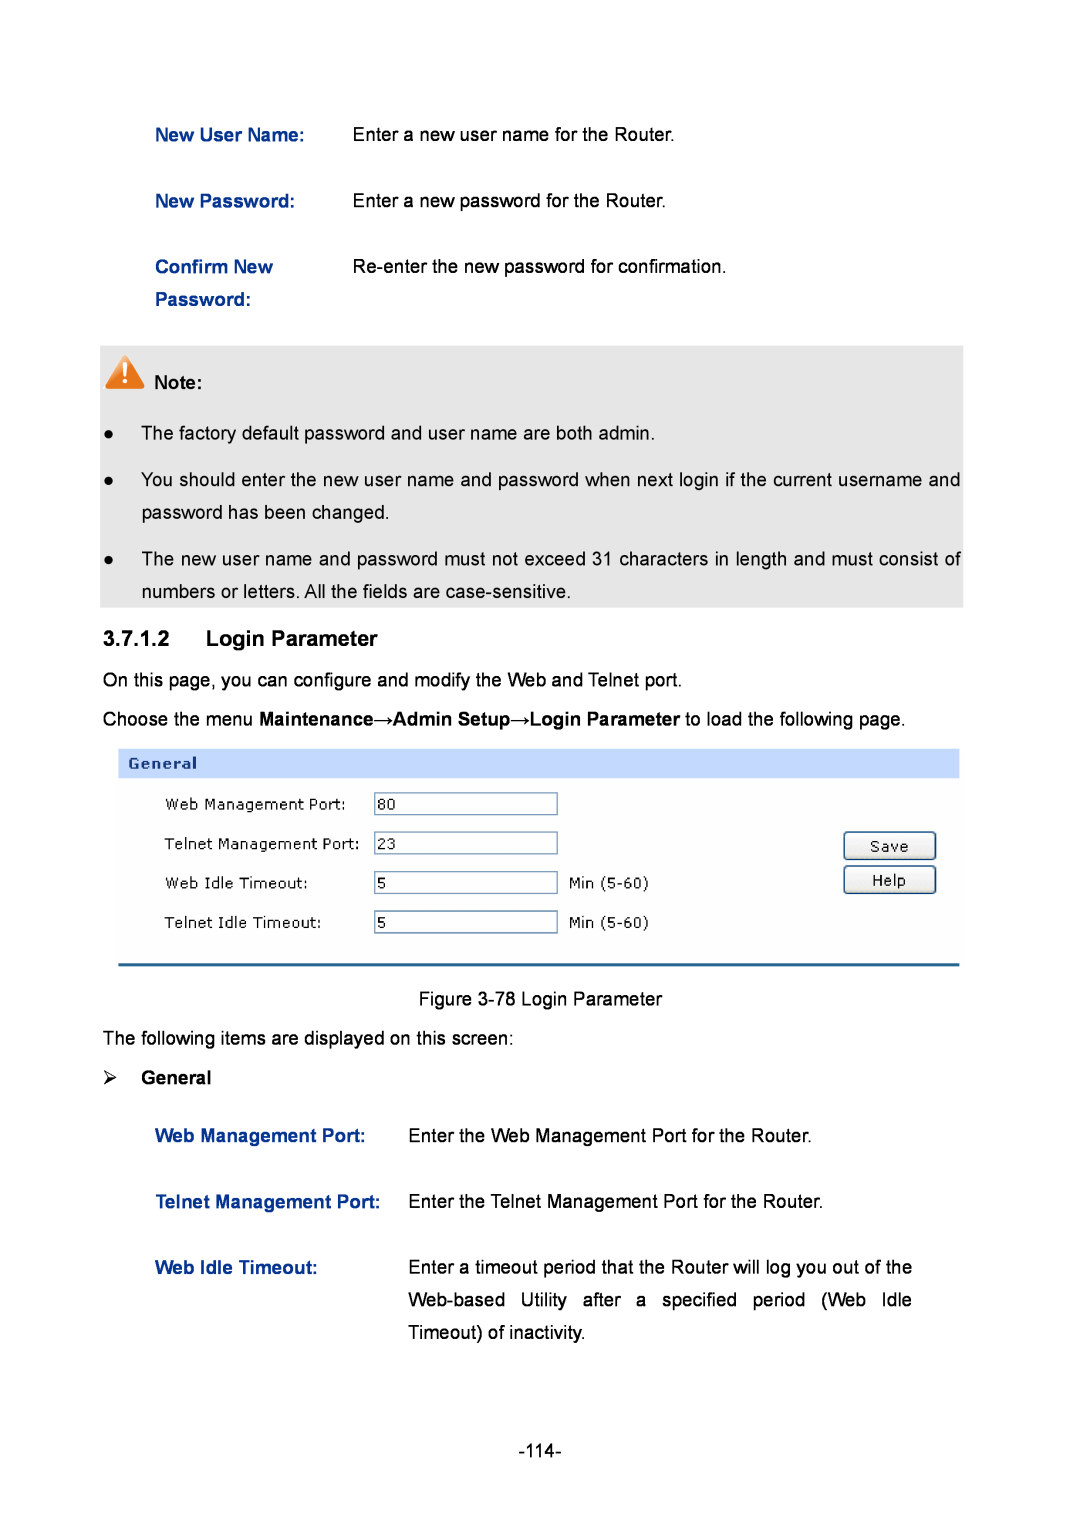 TP-Link TL-ER6020 manual Login Parameter,  General, Re-enter the new password for confirmation 